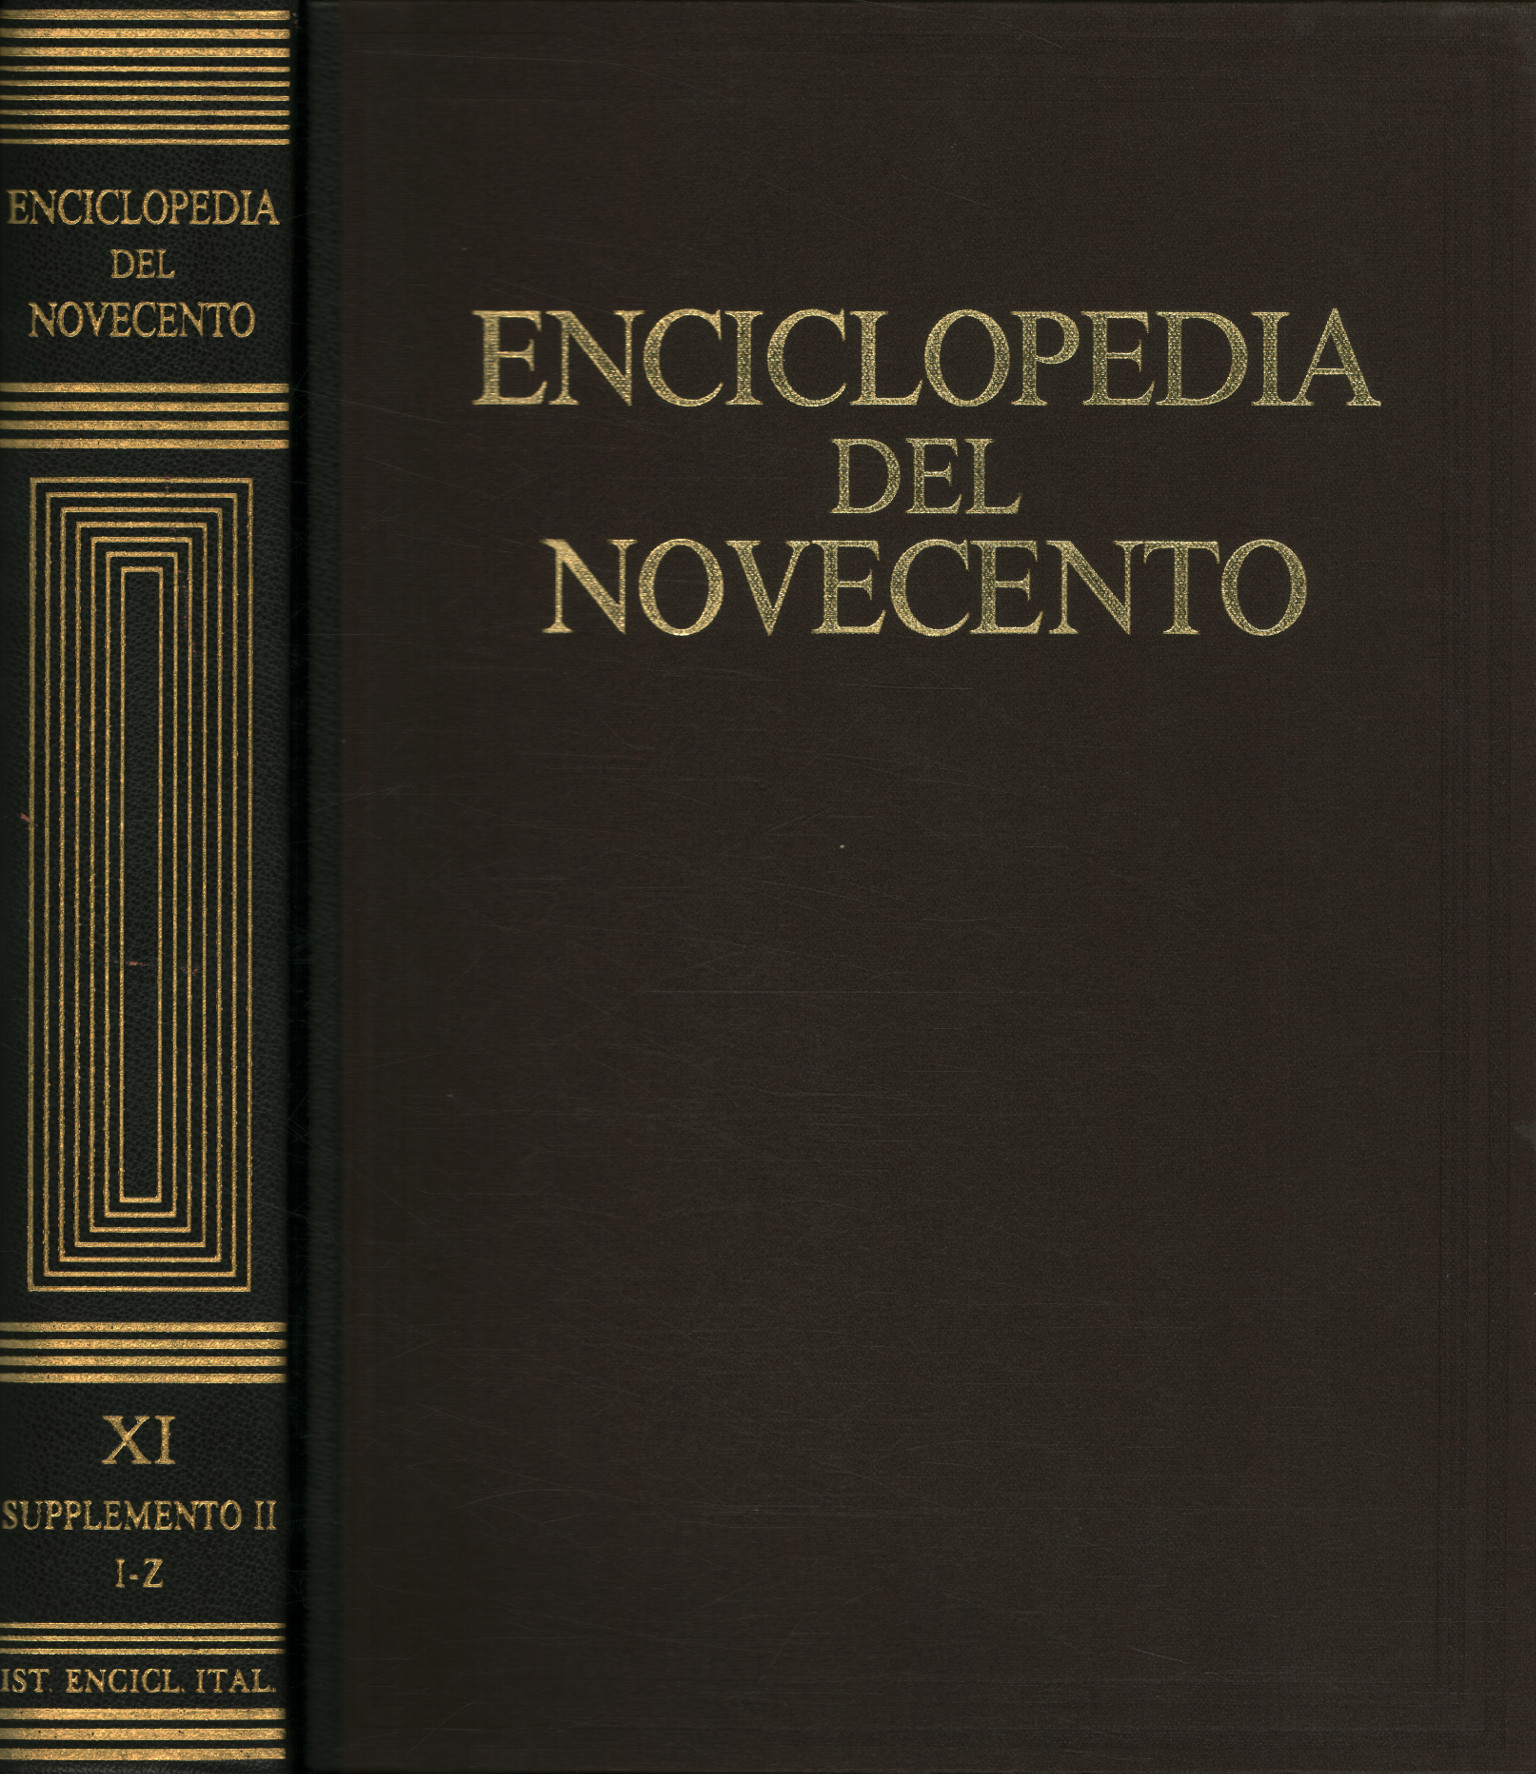 Enciclopedia del Novecento. Supplemento II